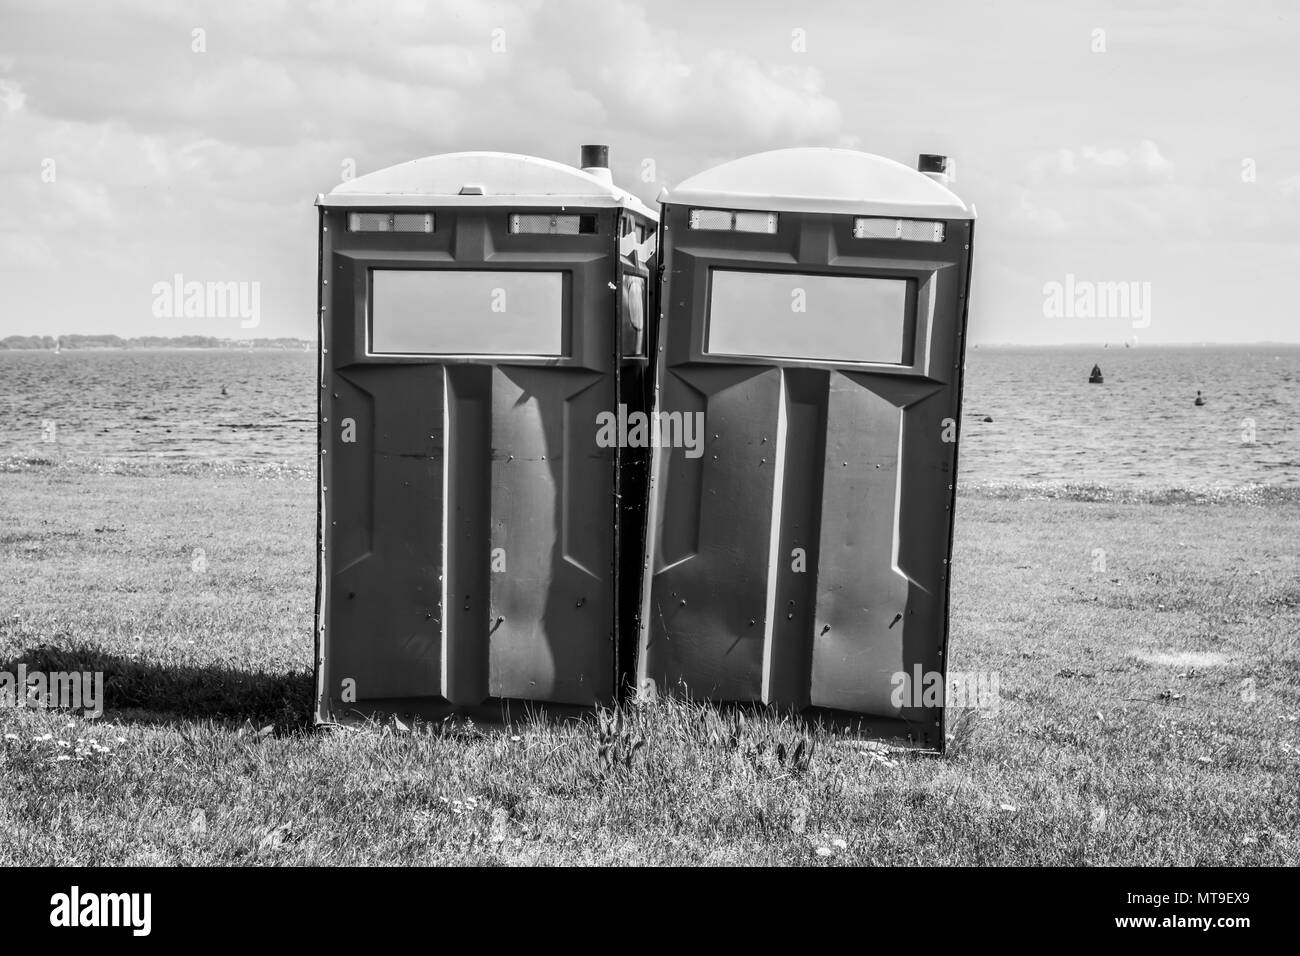 Toilettes mobiles sur une plage. Image en noir et blanc Banque D'Images